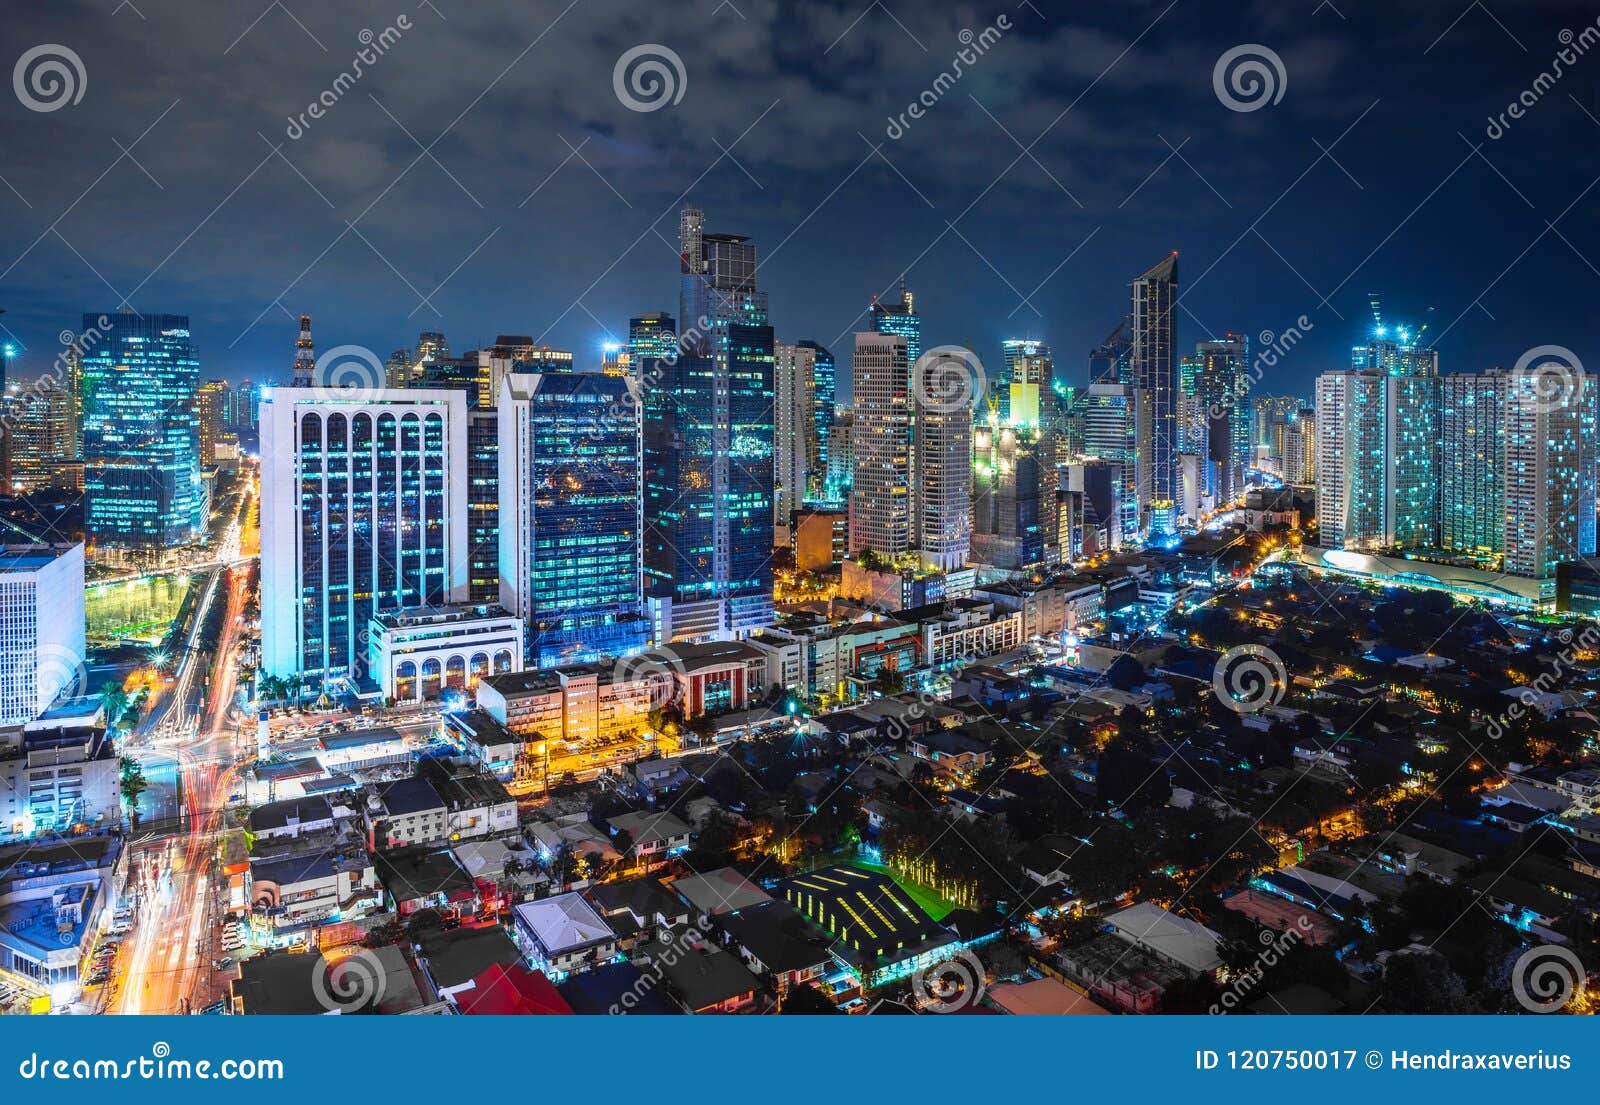 metro manila cityscape at night